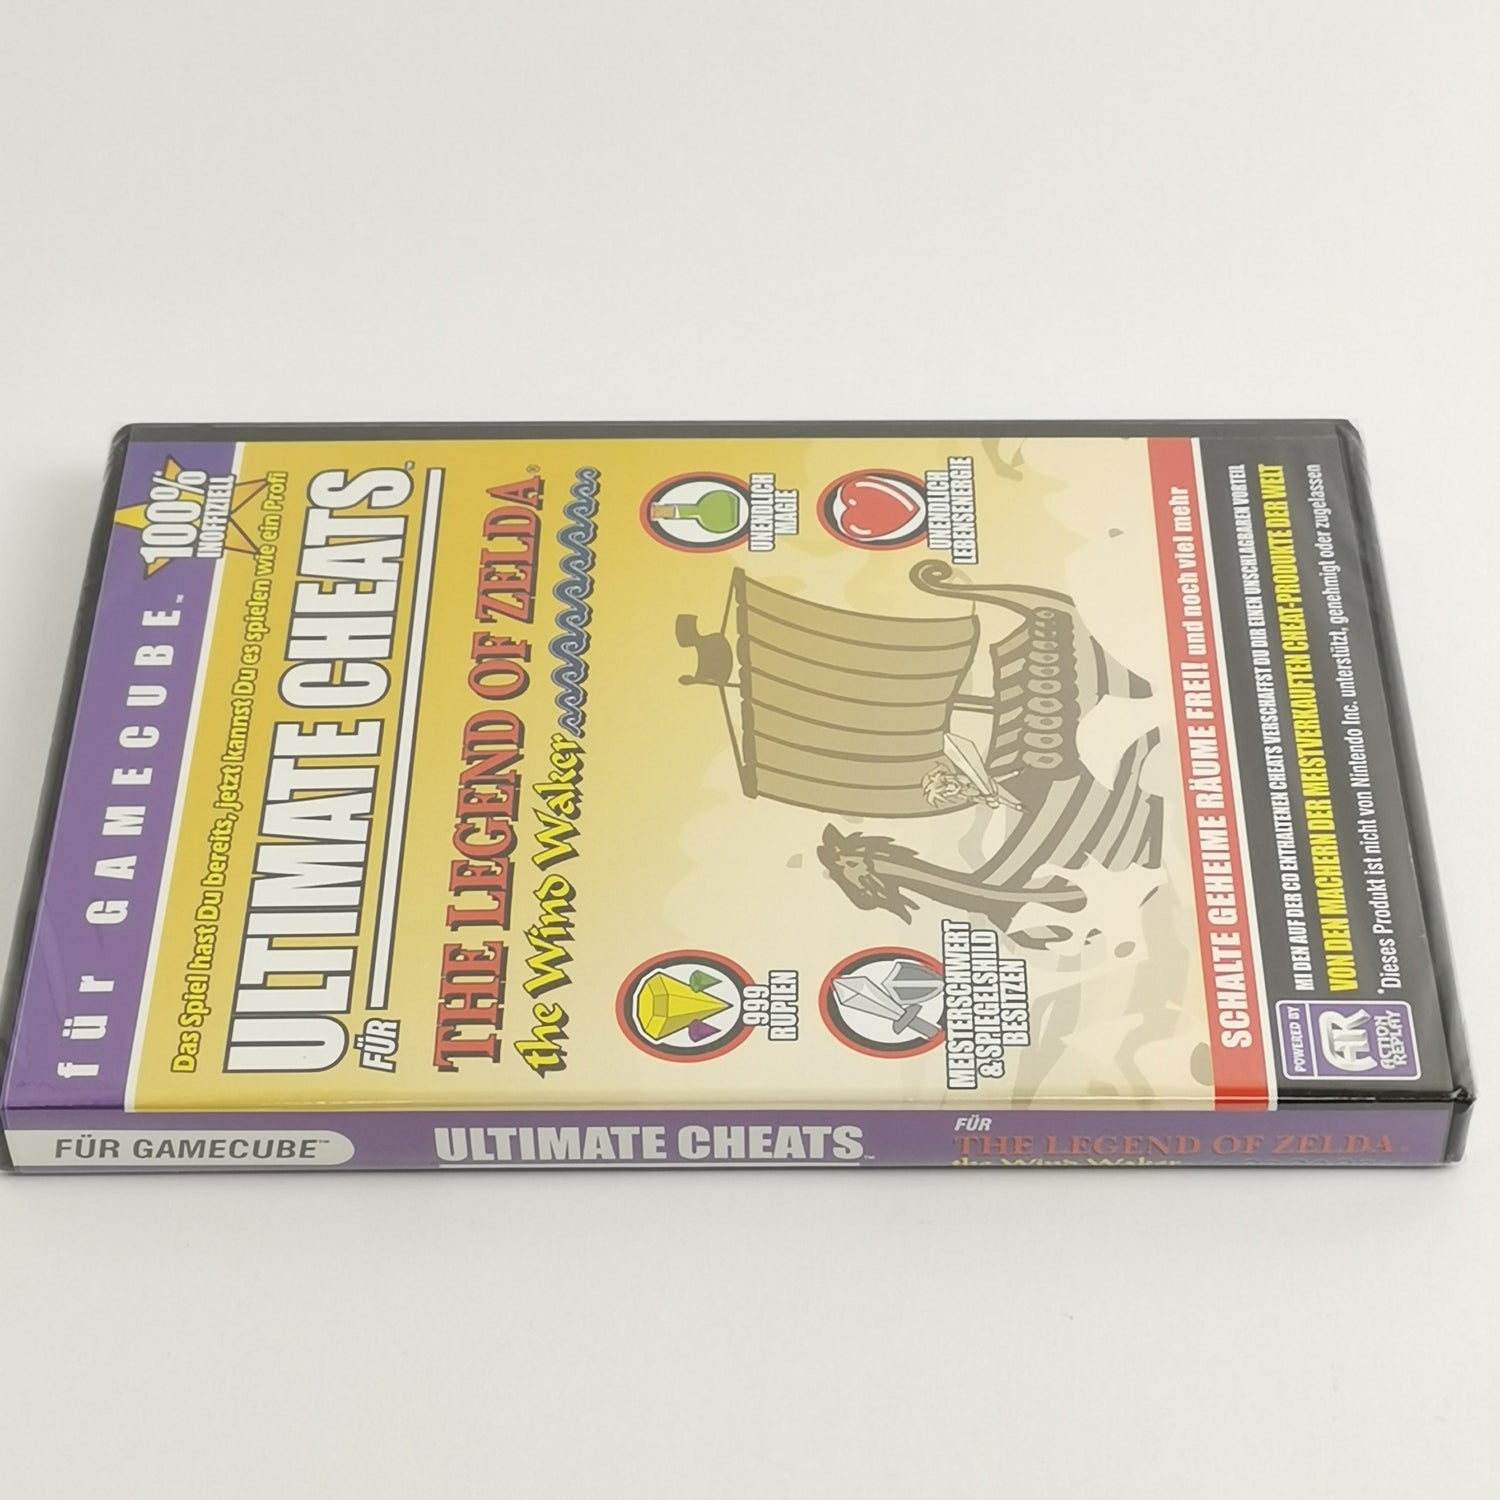 Nintendo Gamecube : Ultimate Cheatcodes - Zelda The Windwaker NEU SEALED